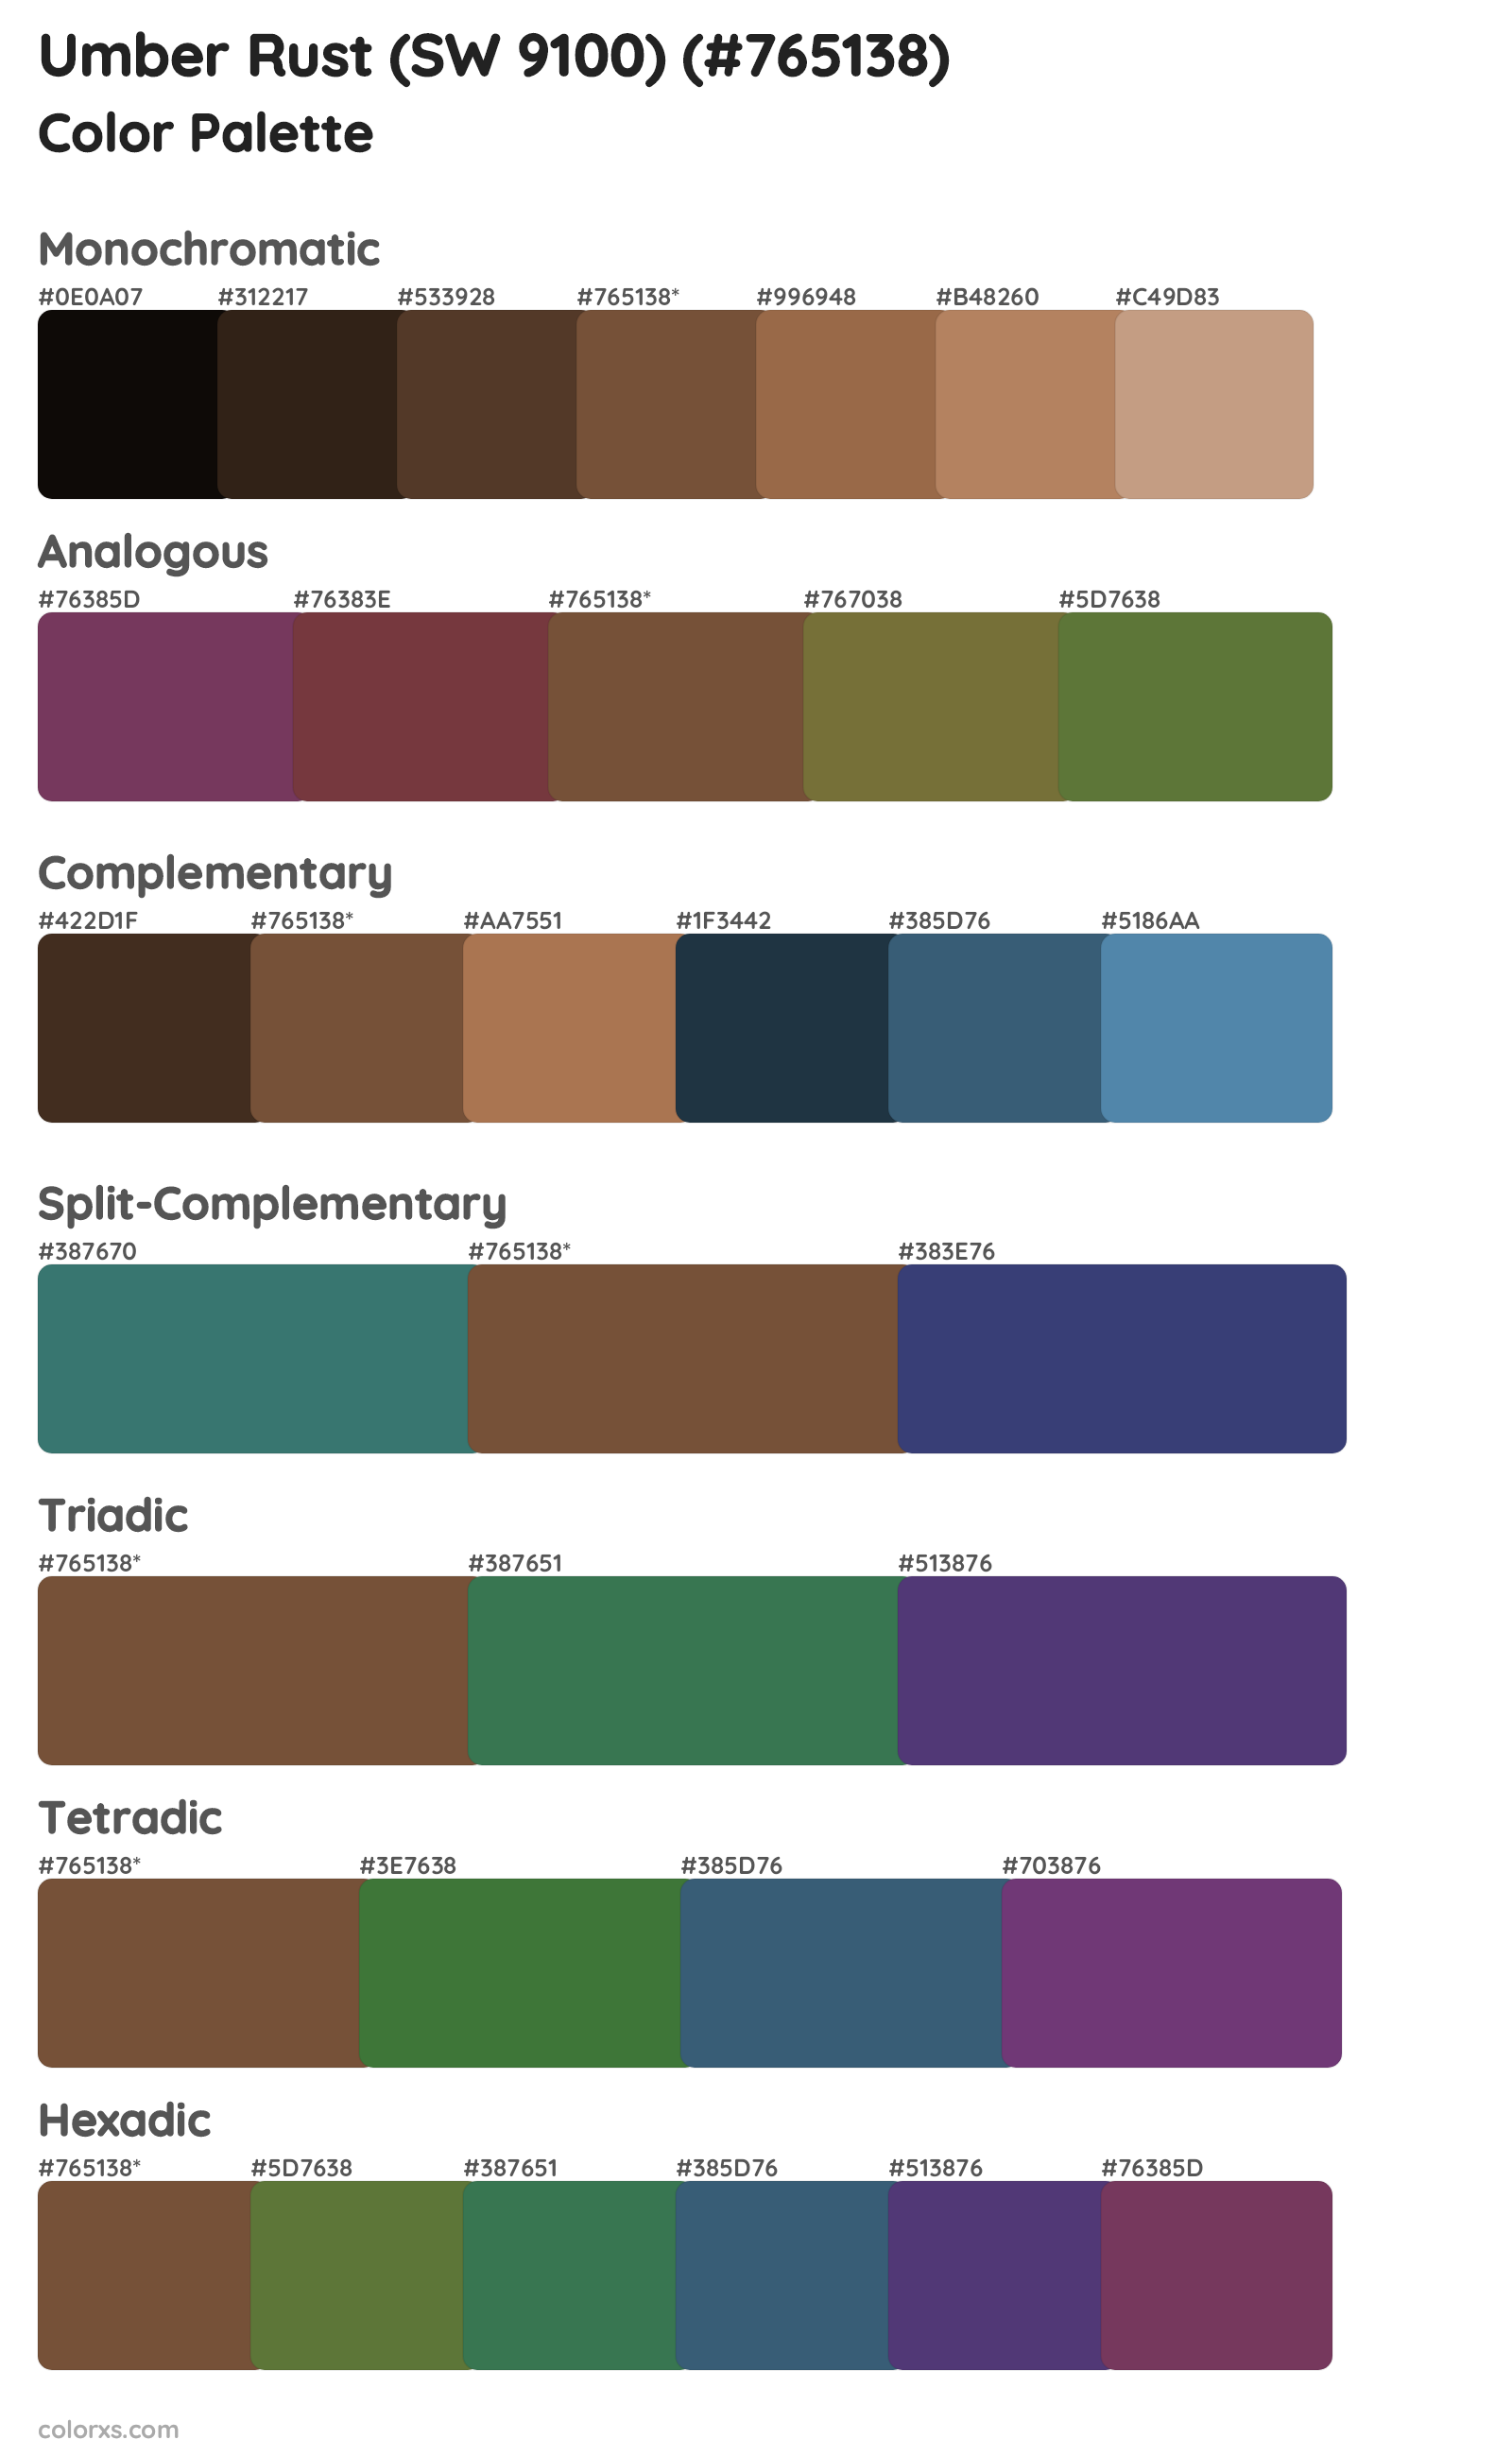 Umber Rust (SW 9100) Color Scheme Palettes